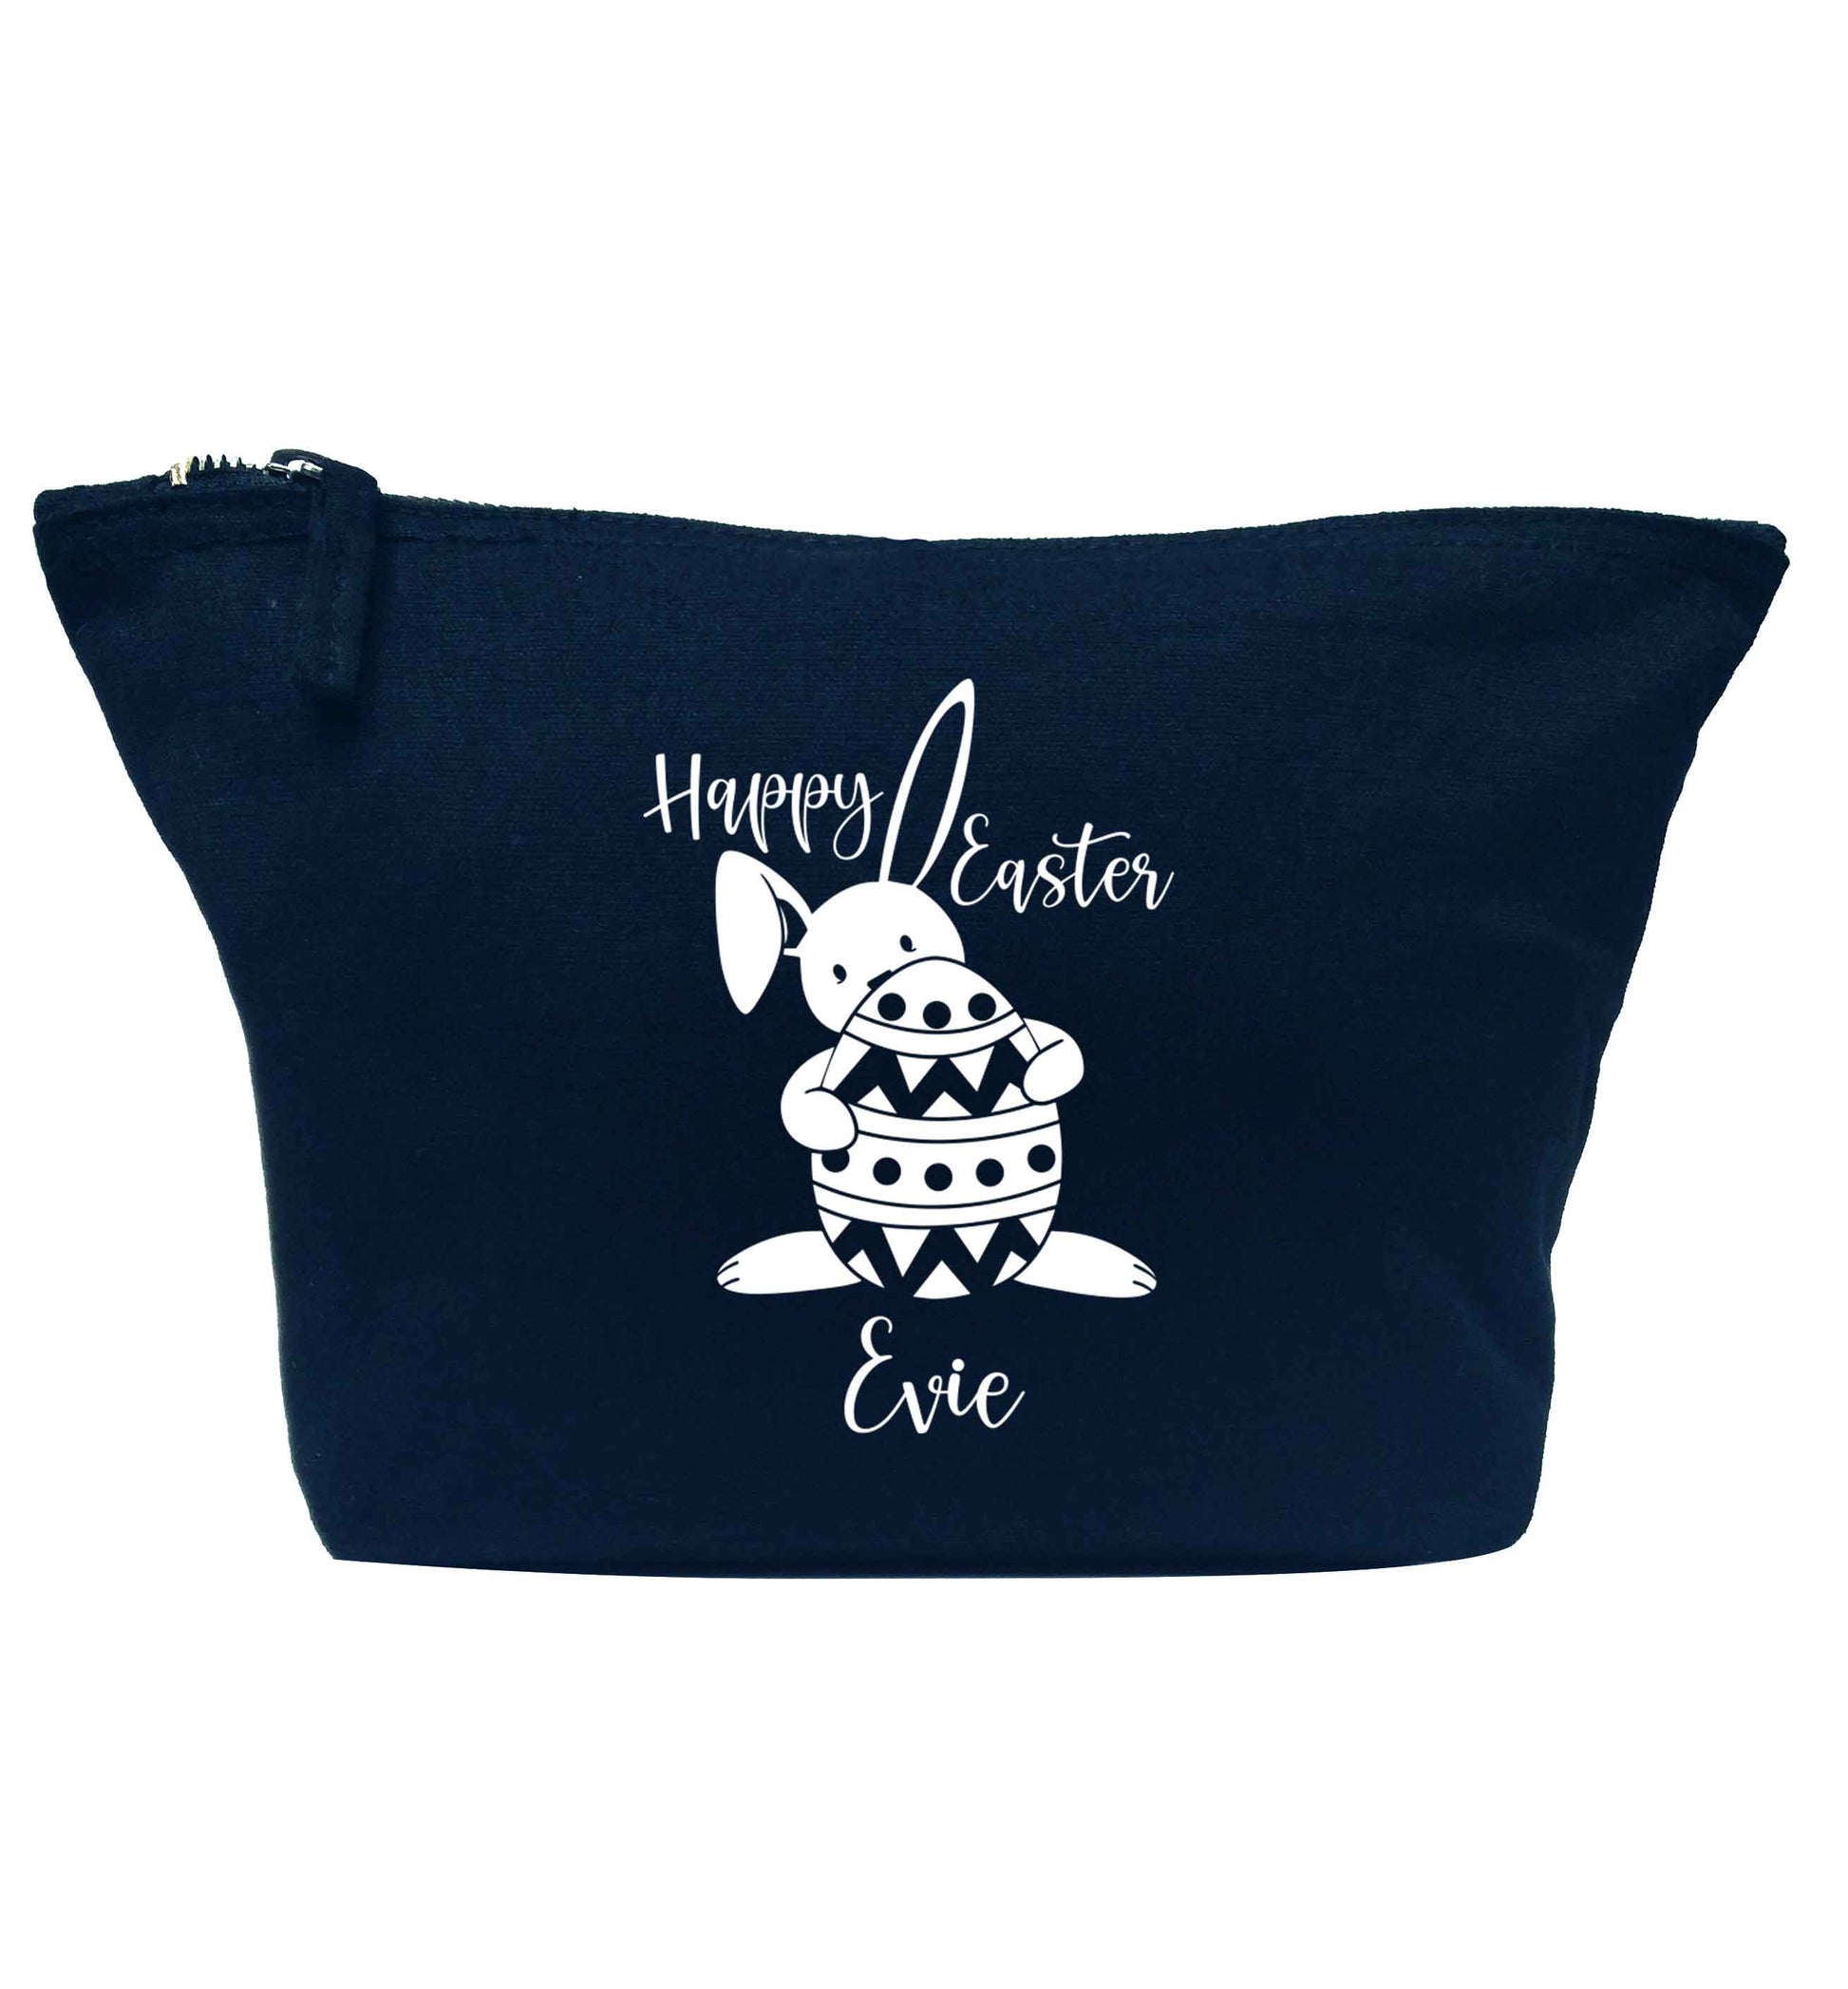 Happy Easter - personalised navy makeup bag